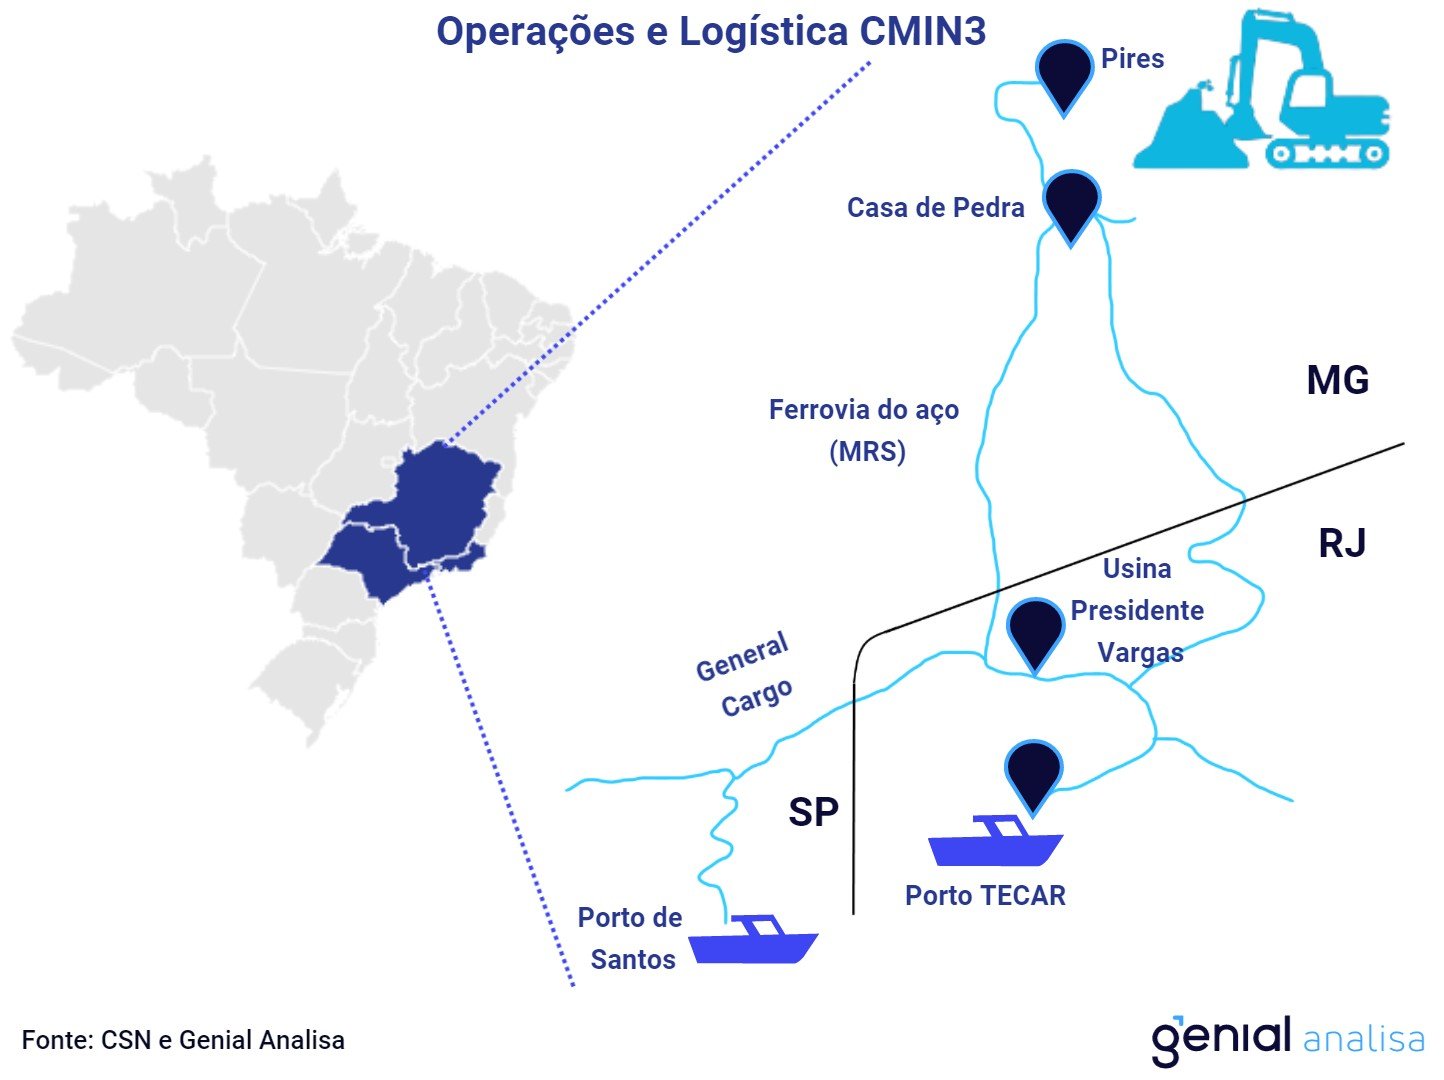 CMIN3: operação logística. Fonte: Genial/CSN Mineração